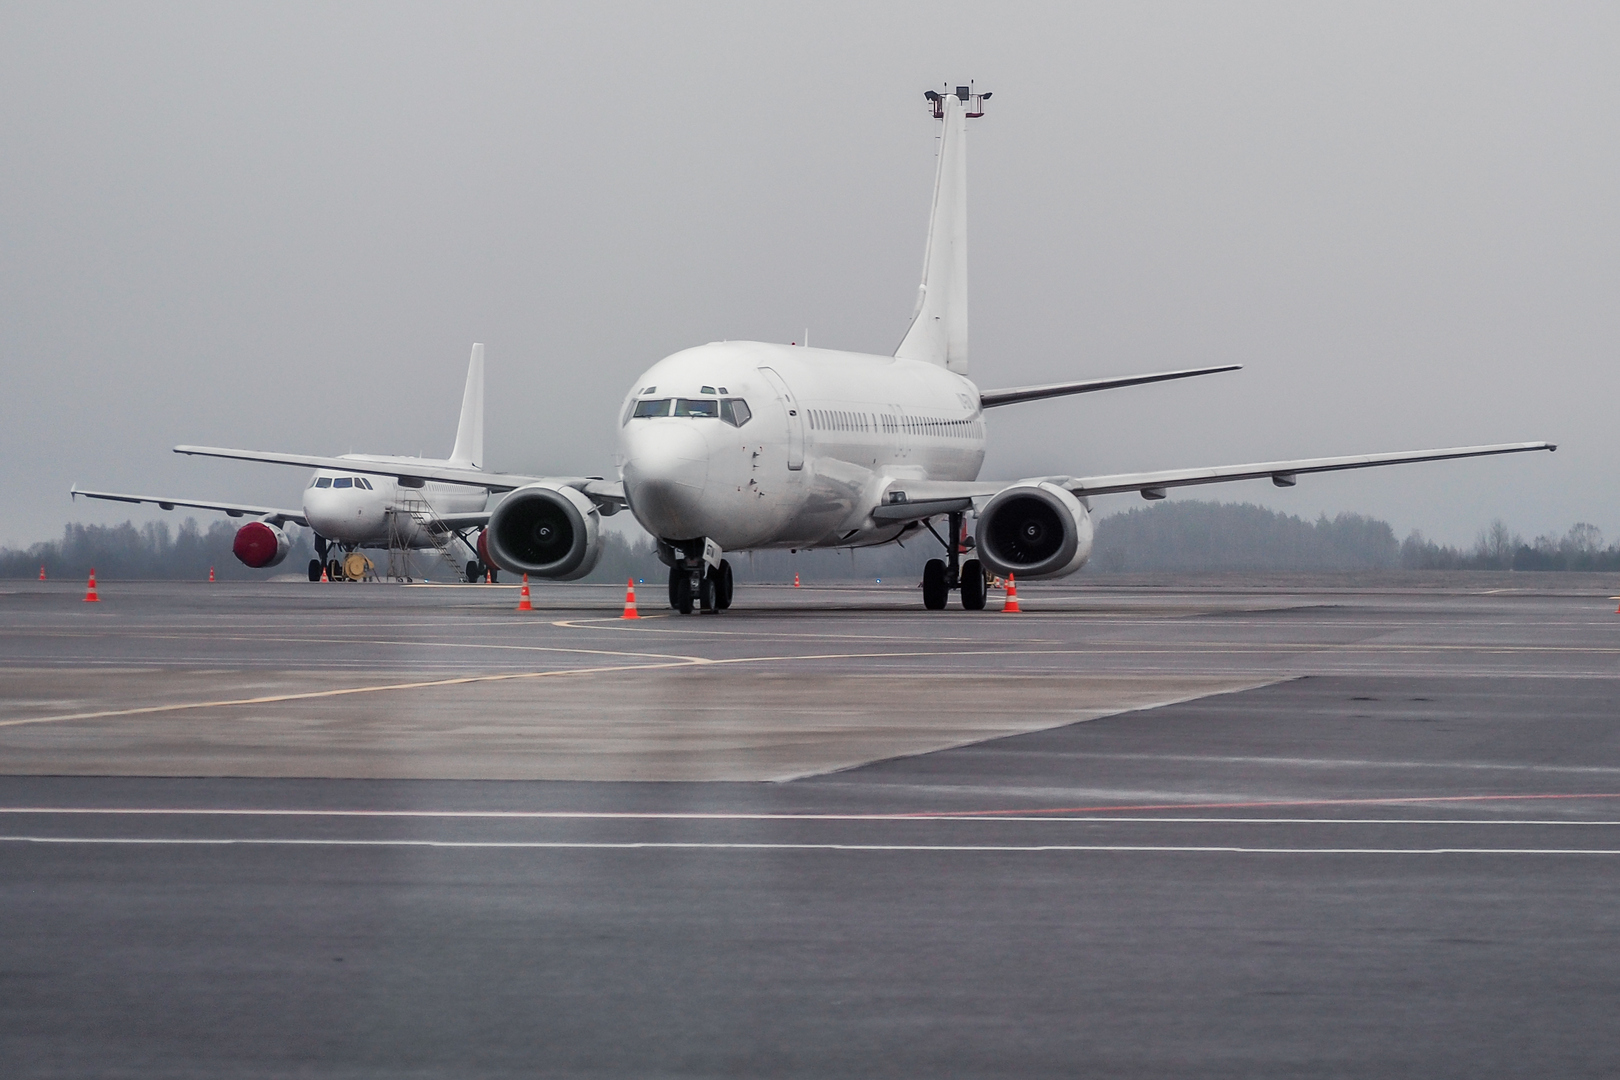 ليتوانيا وسلوفينيا تغلقان مجالهما الجوي أمام شركات الطيران الروسية